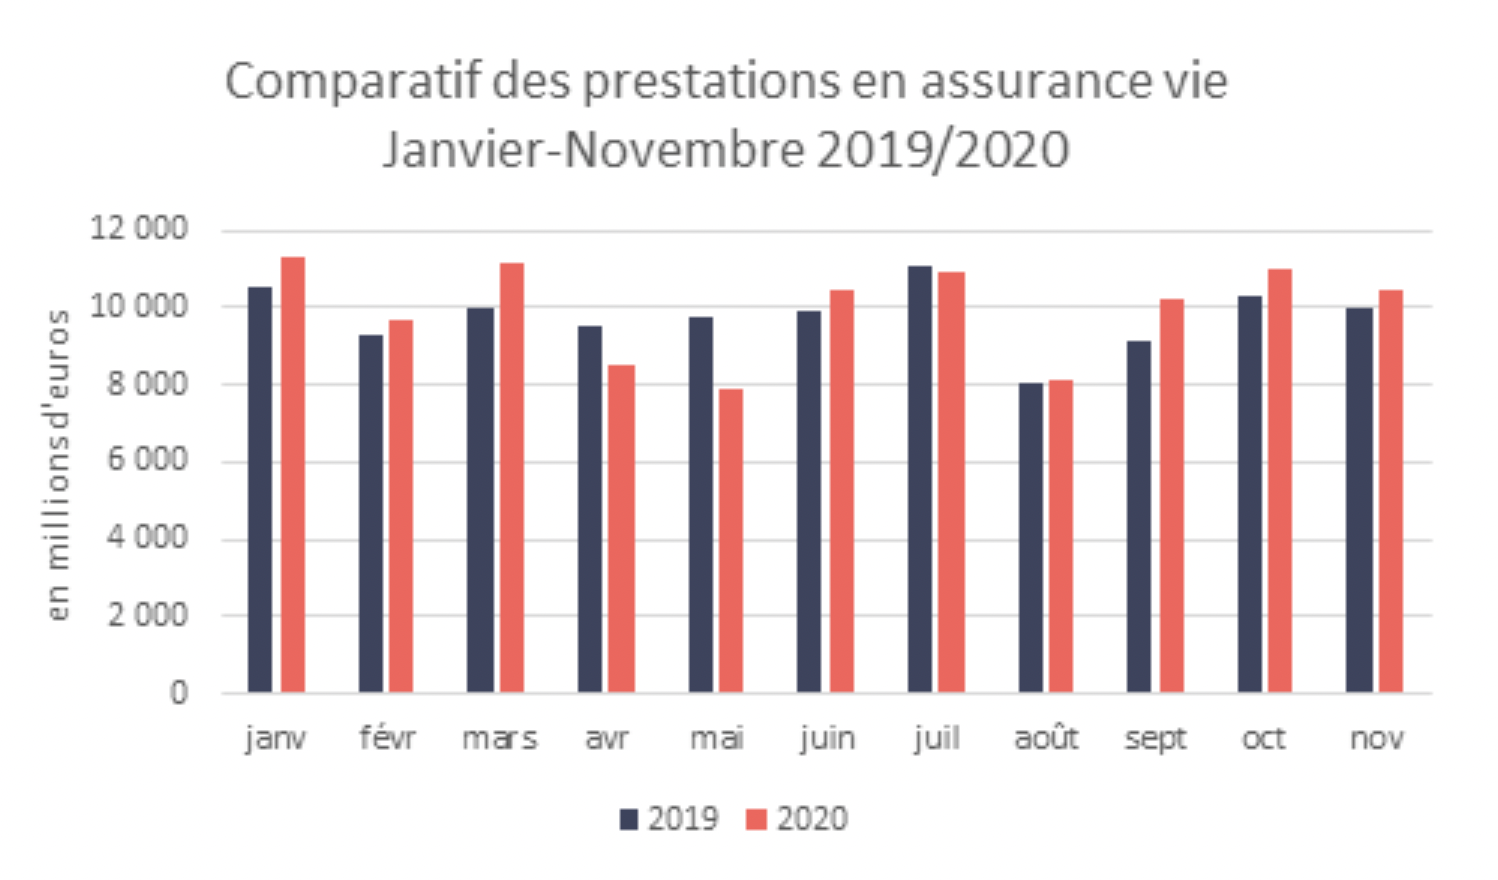 Comparati des prestations en assurance vie janvier-novembre 2019/2020